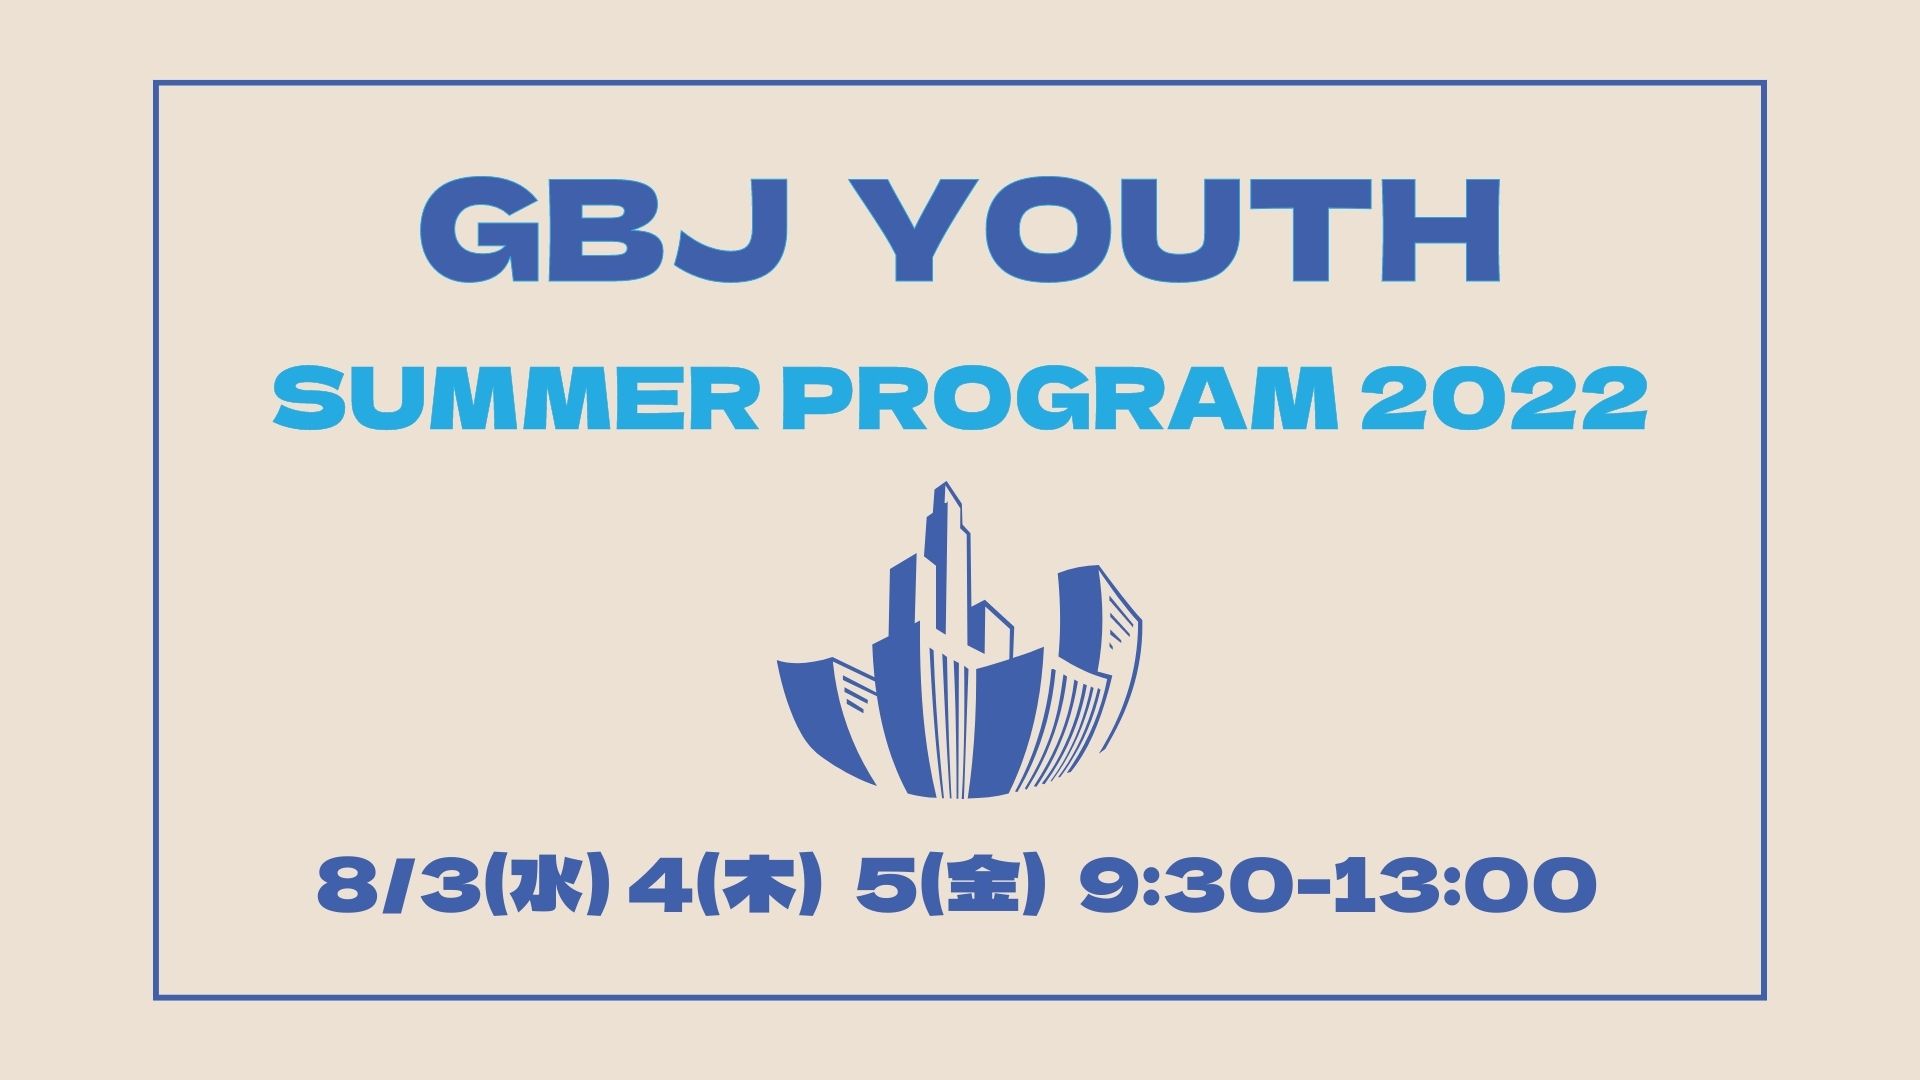 【高校生対象】GBJ Youth Summer Program 2022「グリーンビルディングってなんだろう？」